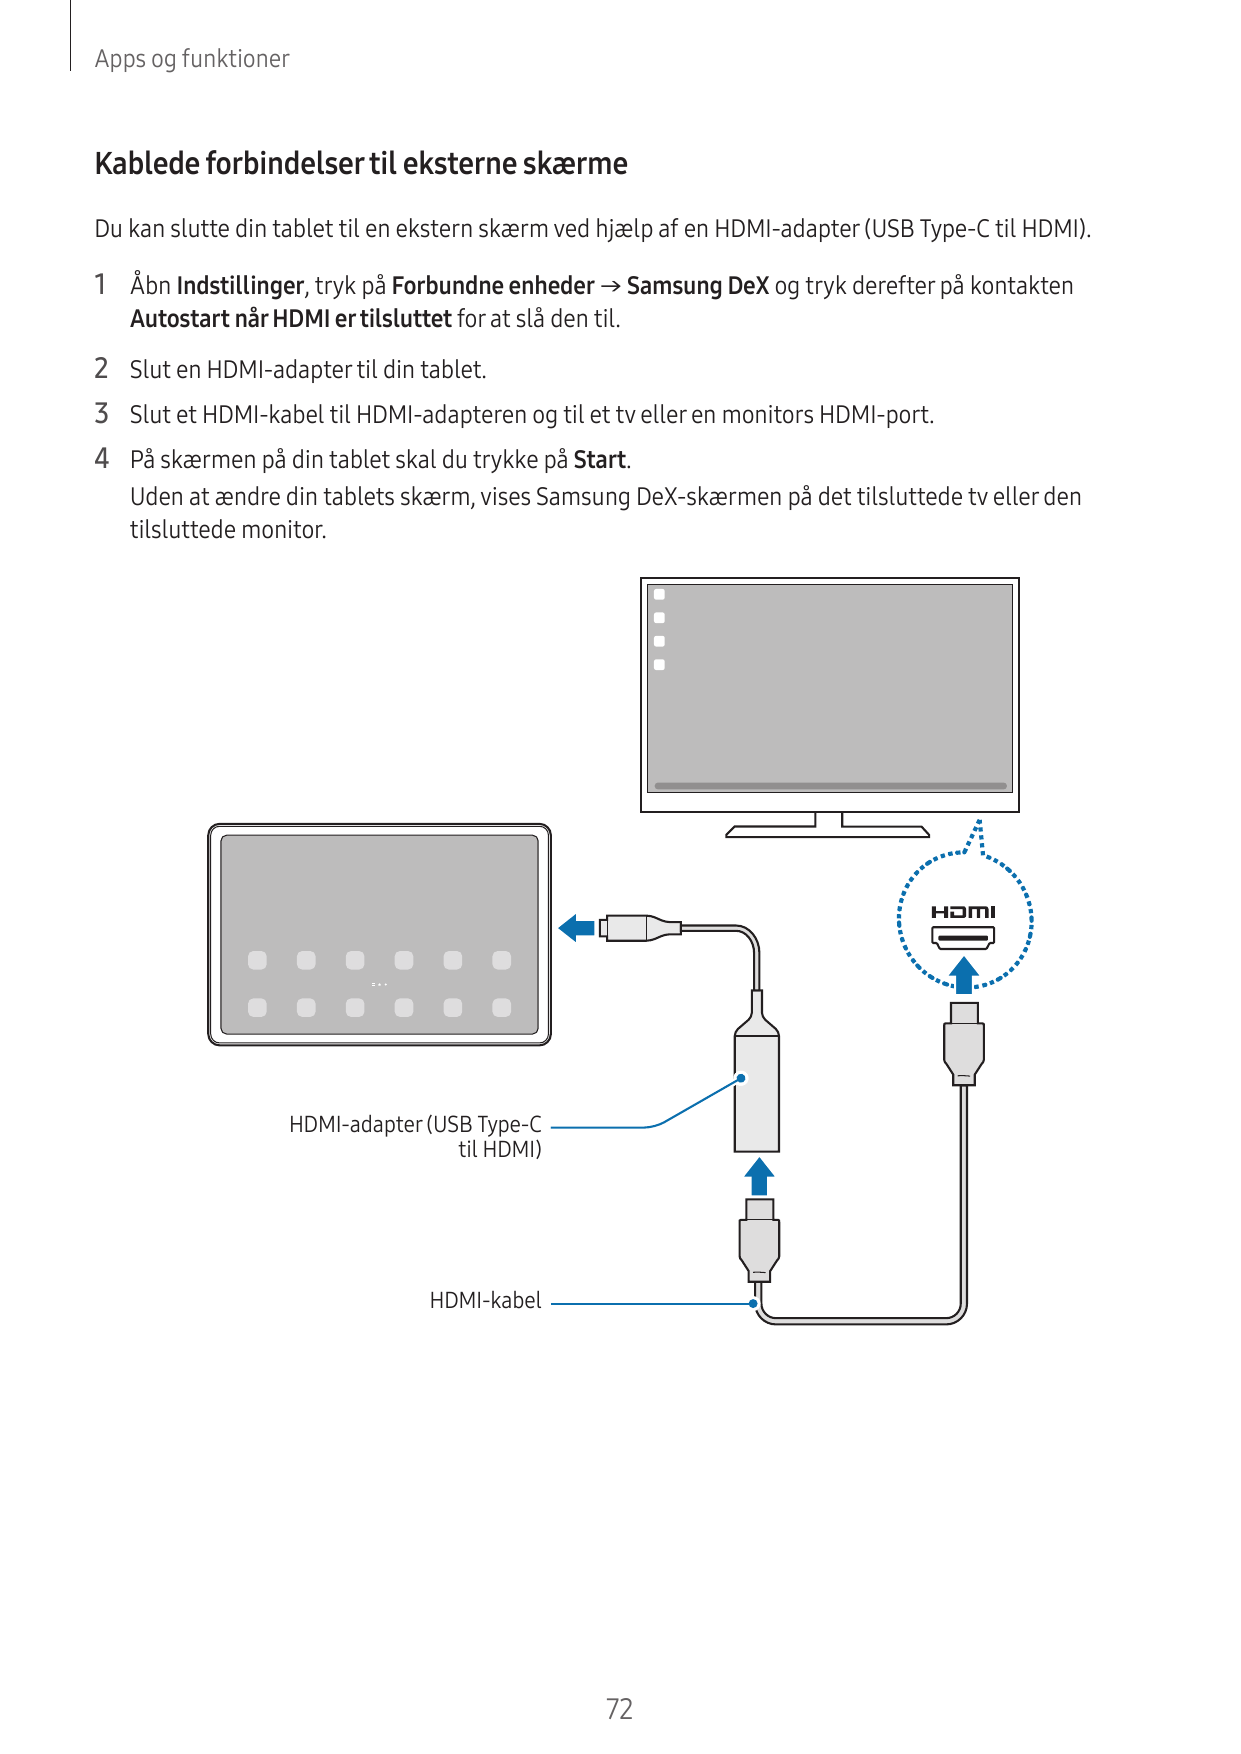 Apps og funktionerKablede forbindelser til eksterne skærmeDu kan slutte din tablet til en ekstern skærm ved hjælp af en HDMI-ada